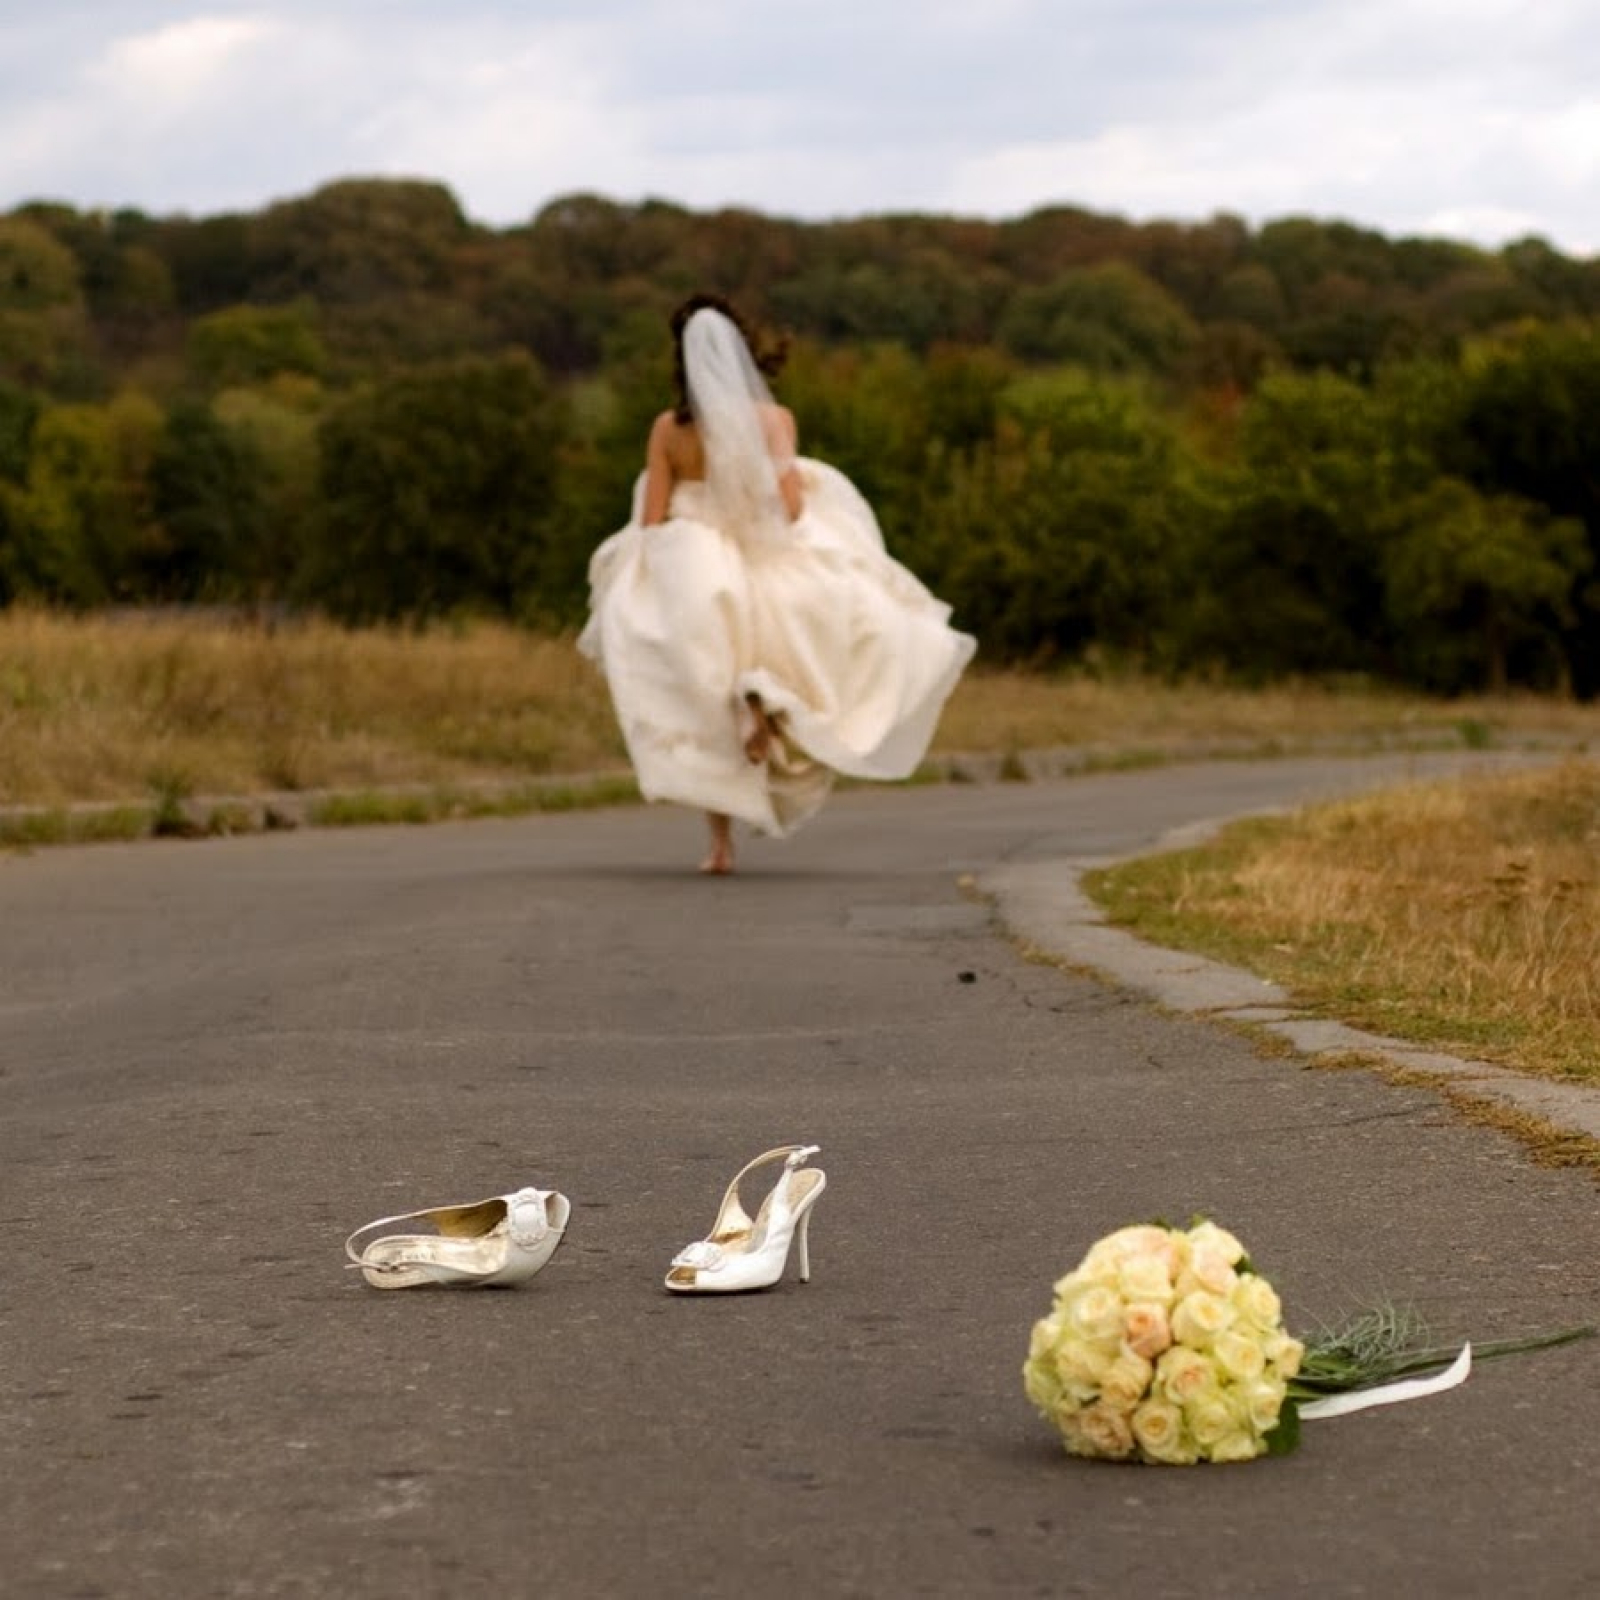 Лакшери сбежала со свадьбы. Исчезновение невесты из под венца 5 букв.